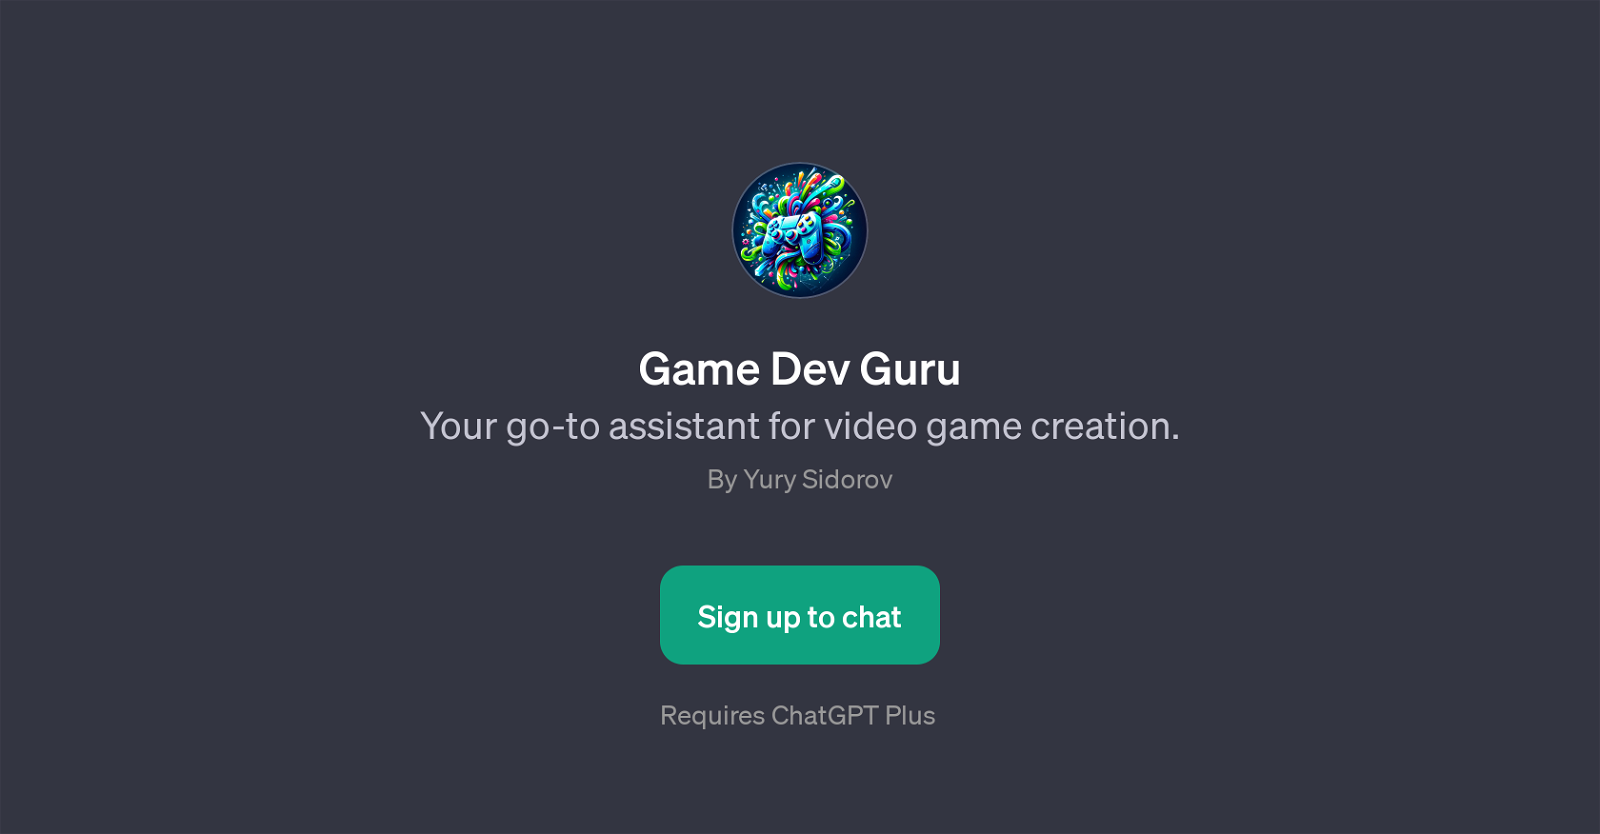 Game Dev Guru website